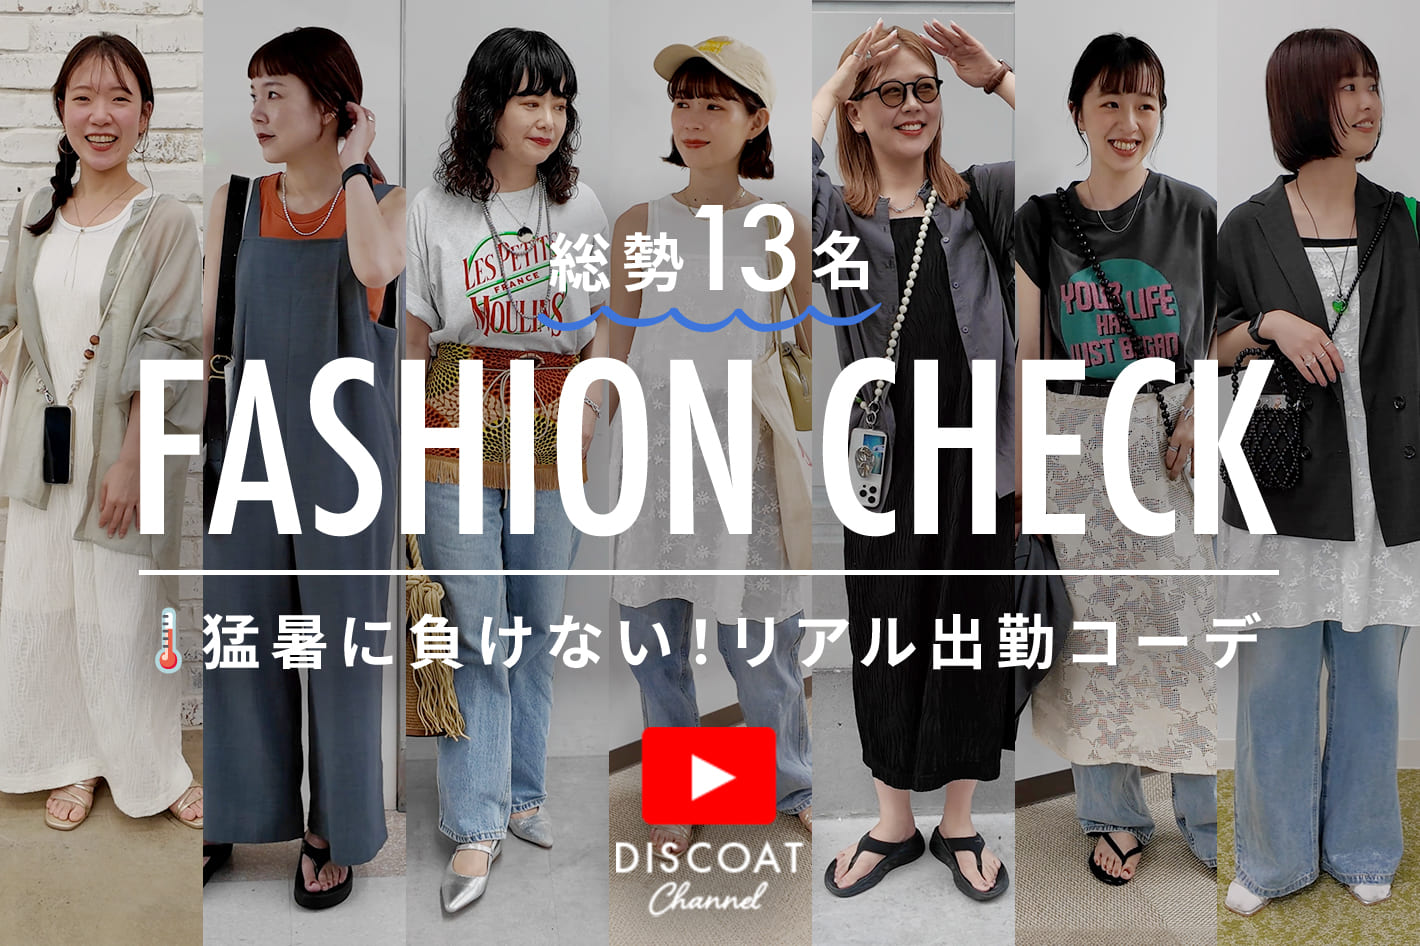 DISCOAT 【突撃ファッションチェック】アパレル本社スタッフの夏の着こなしを大調査!